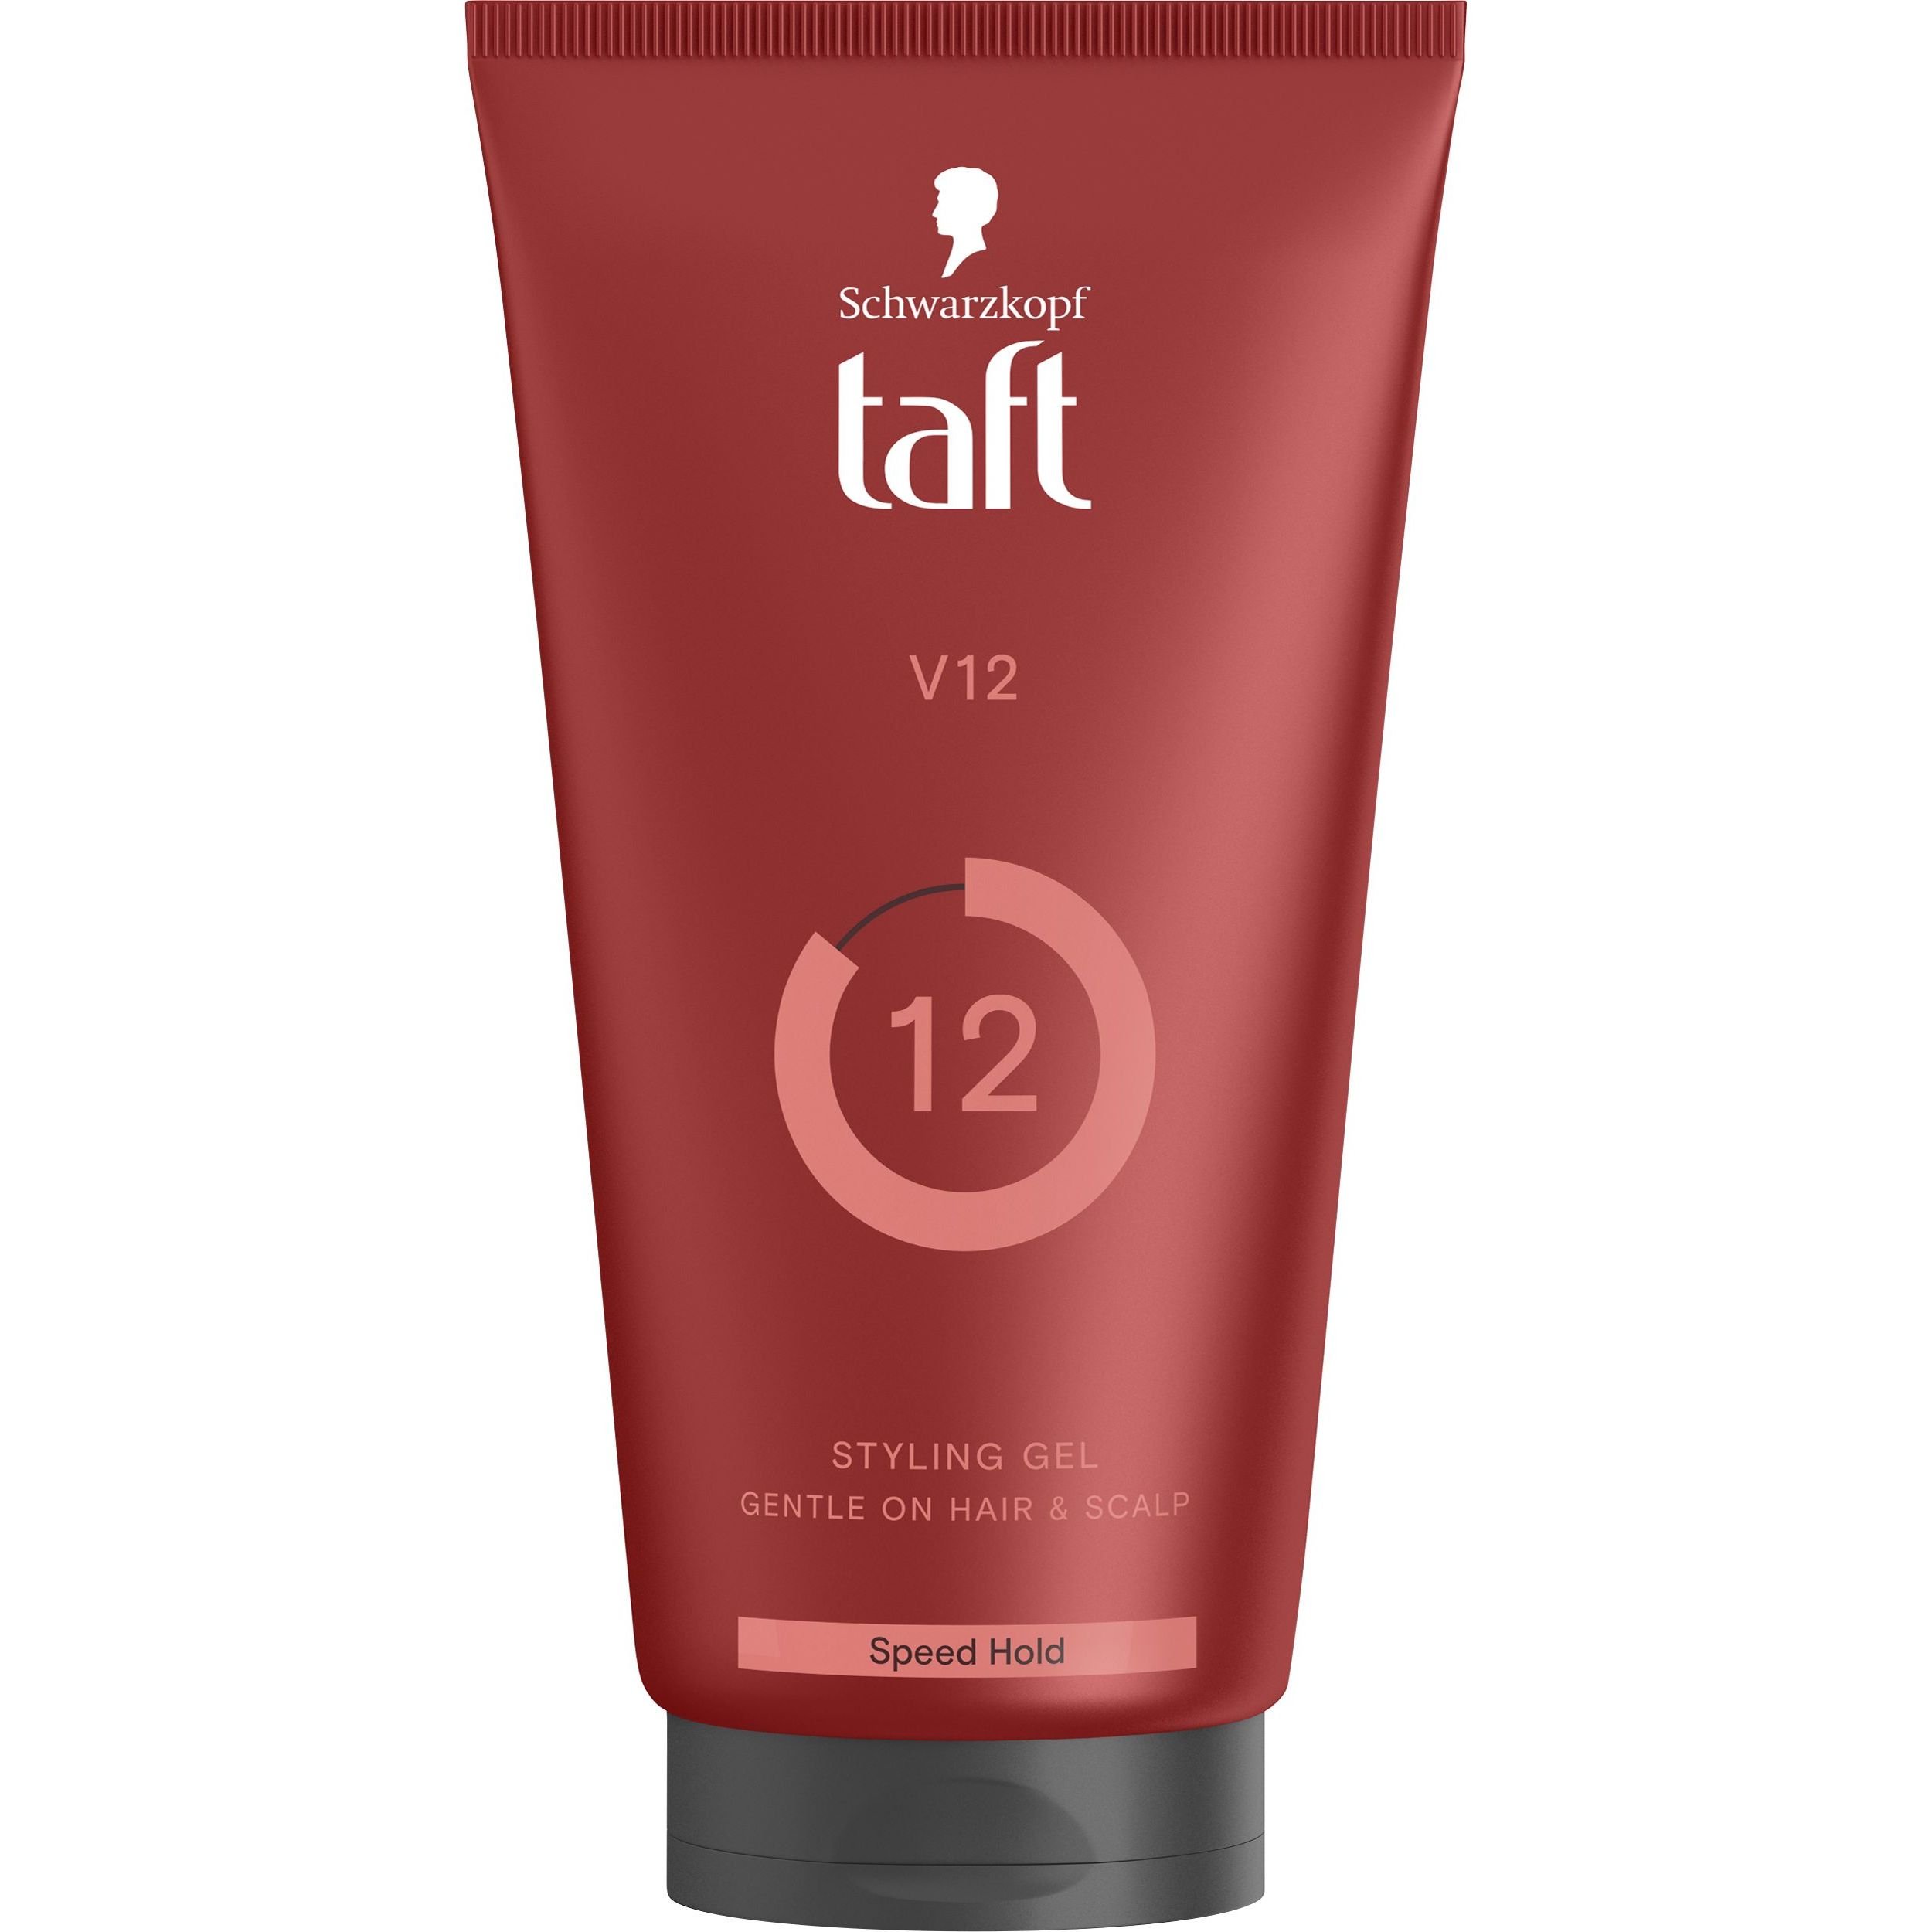 Гель для волос Taft V12, 150 мл - фото 1